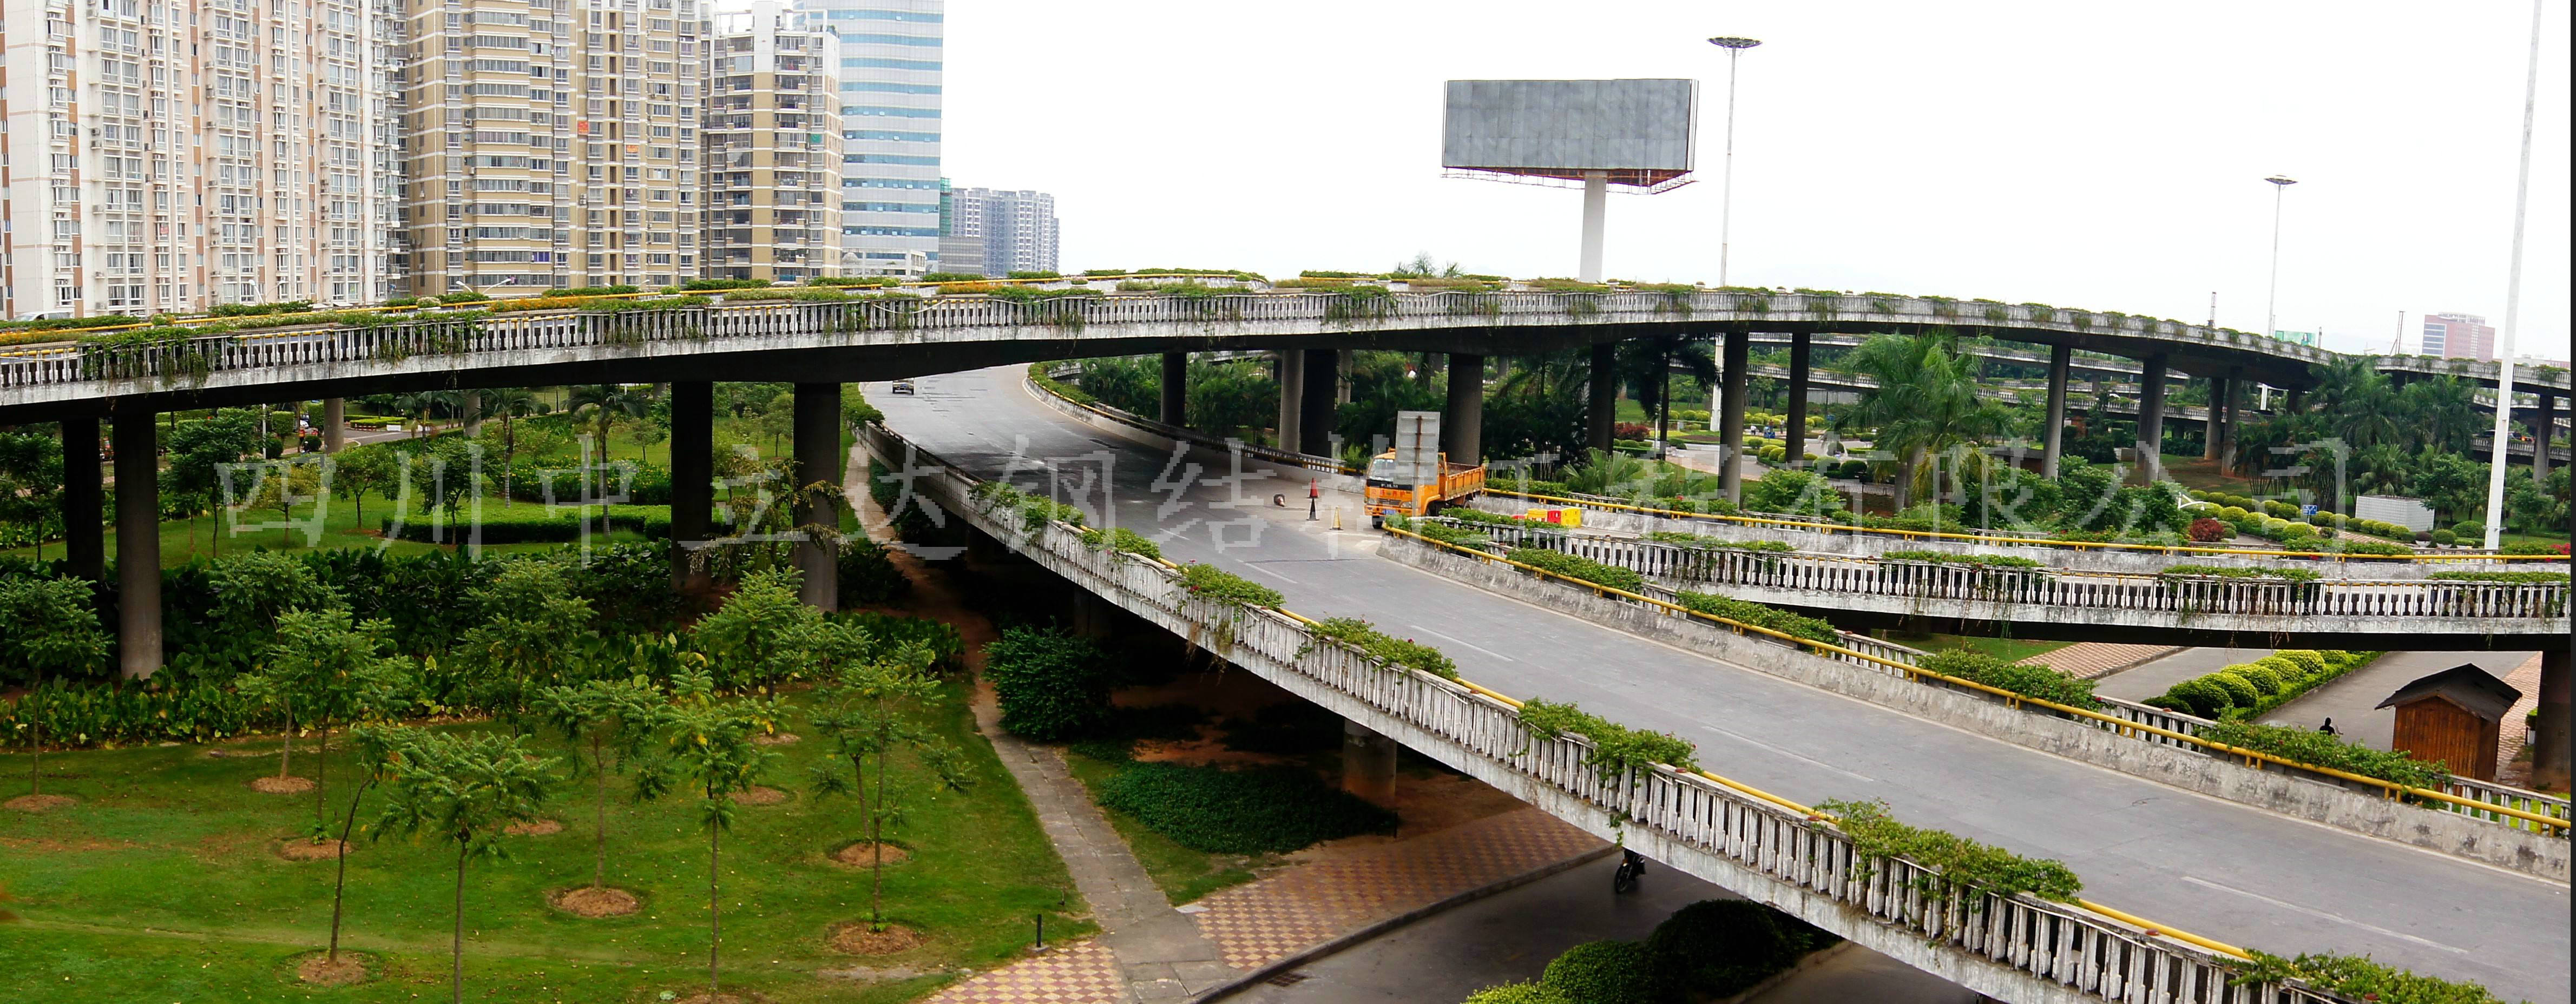 城市高架道路设计有哪些原则